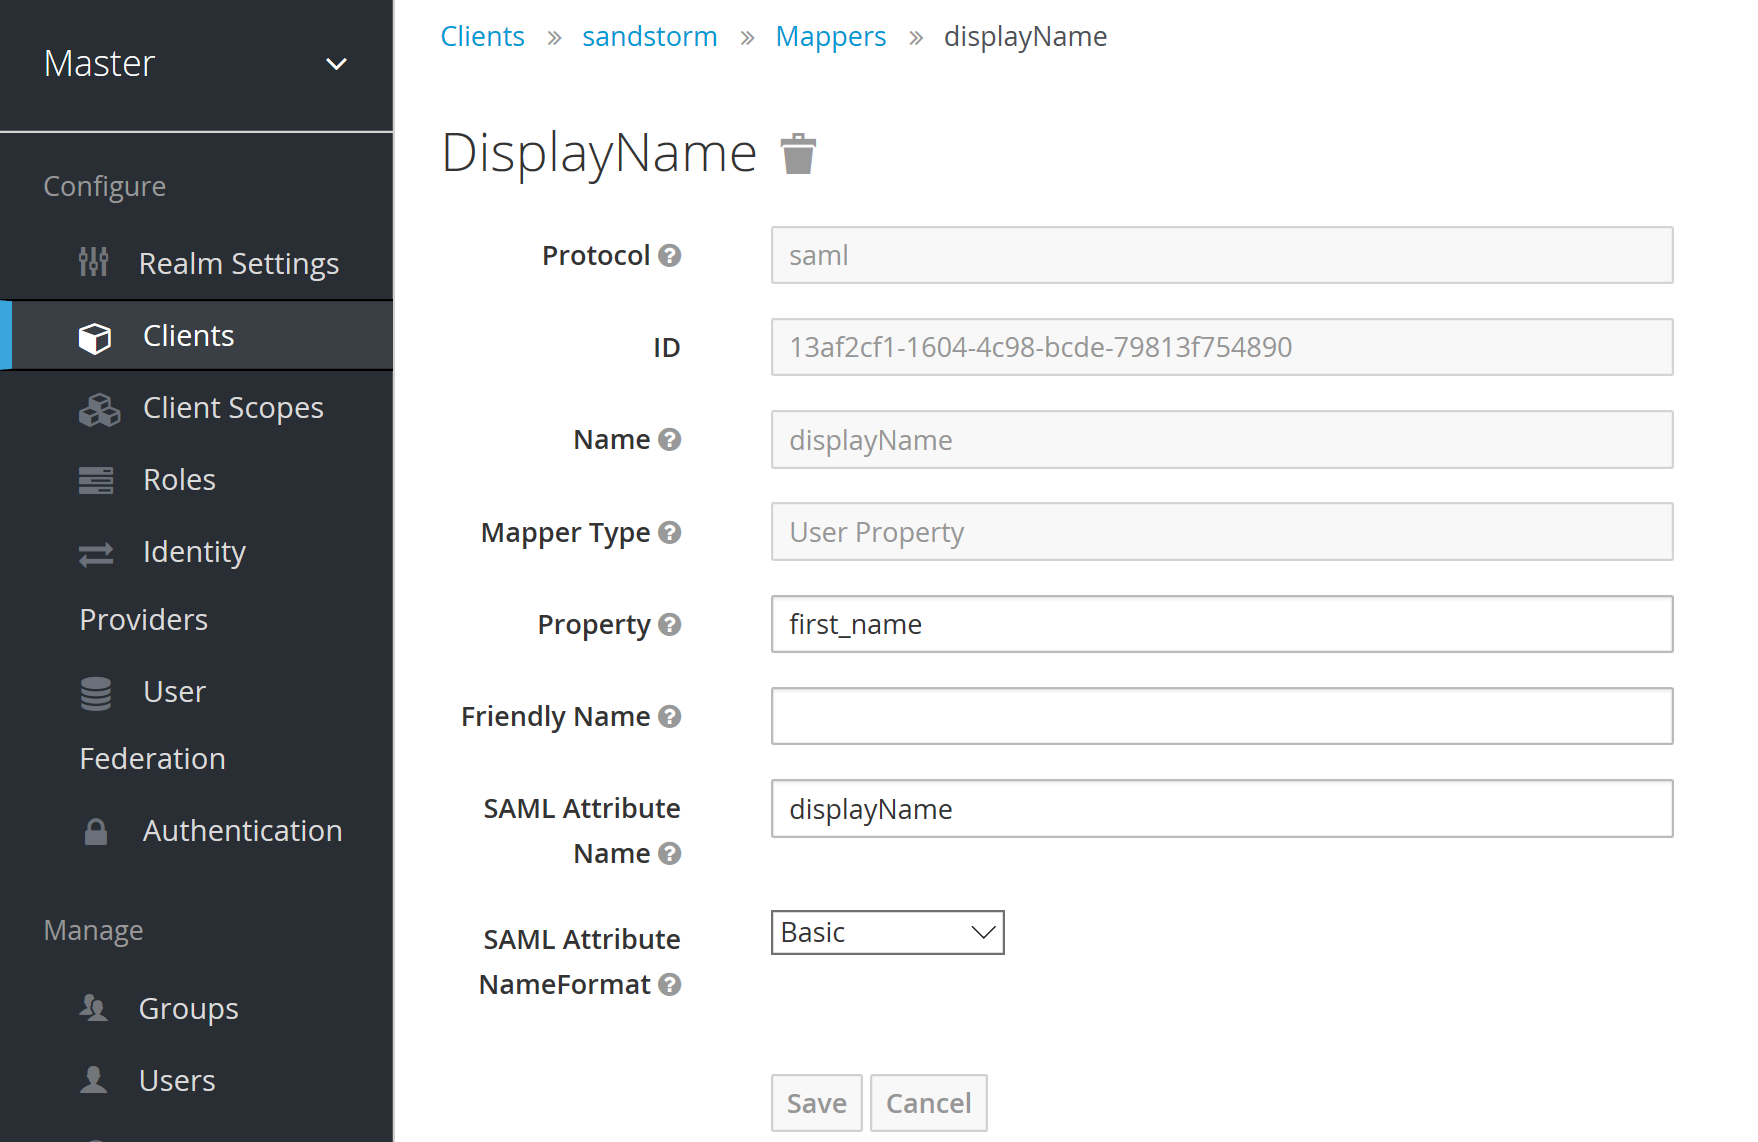 Keycloak Sandstorm Client Mappers - Display Name